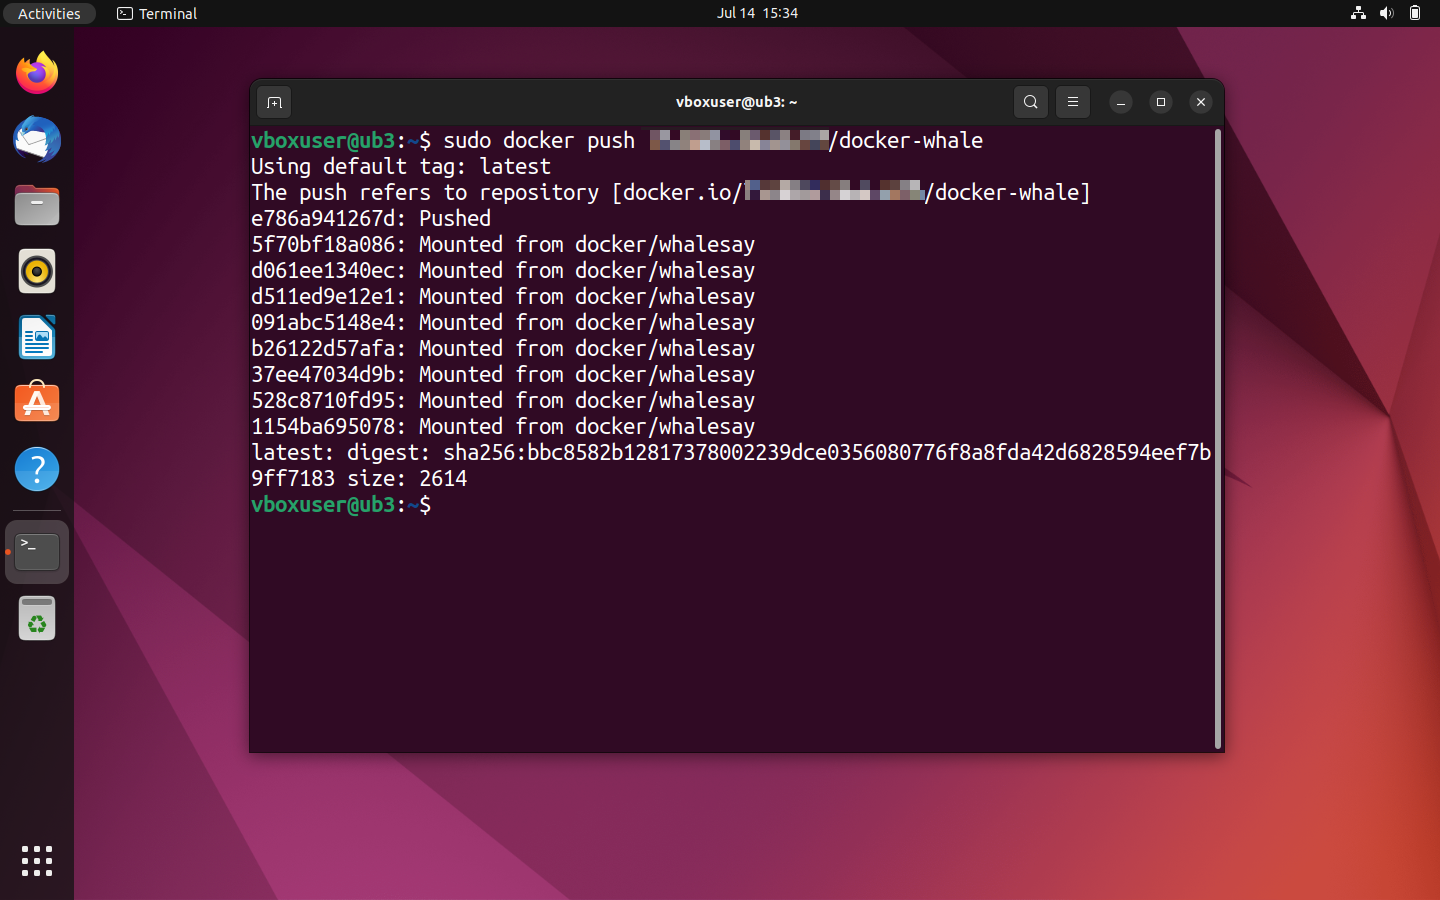 Comunicazione di stato sul terminale di Ubuntu dopo l’upload dell’immagine